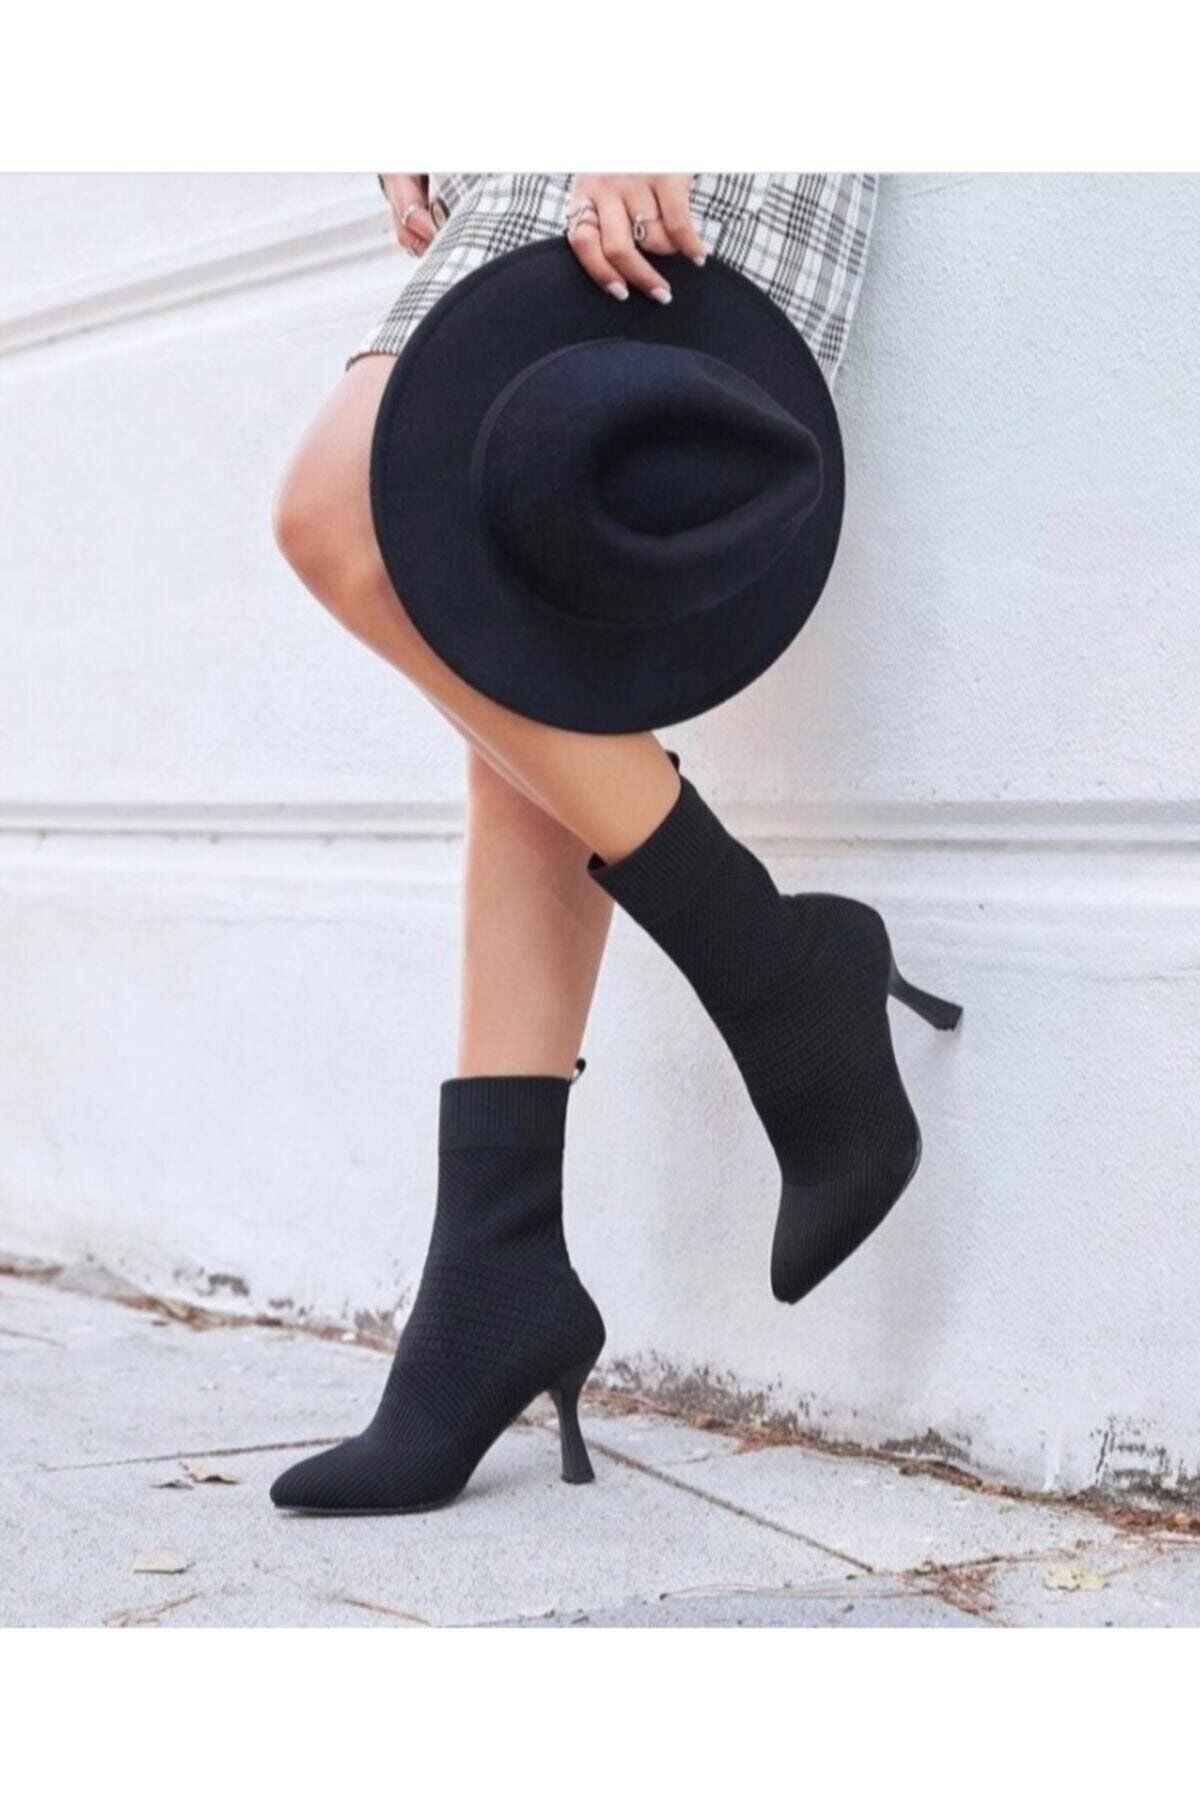 Afilli Kadın Siyah Triko Sivri Burun Kadeh Topuk Bot Şık Çorap Streç Slip On Günlük Ayakkabı